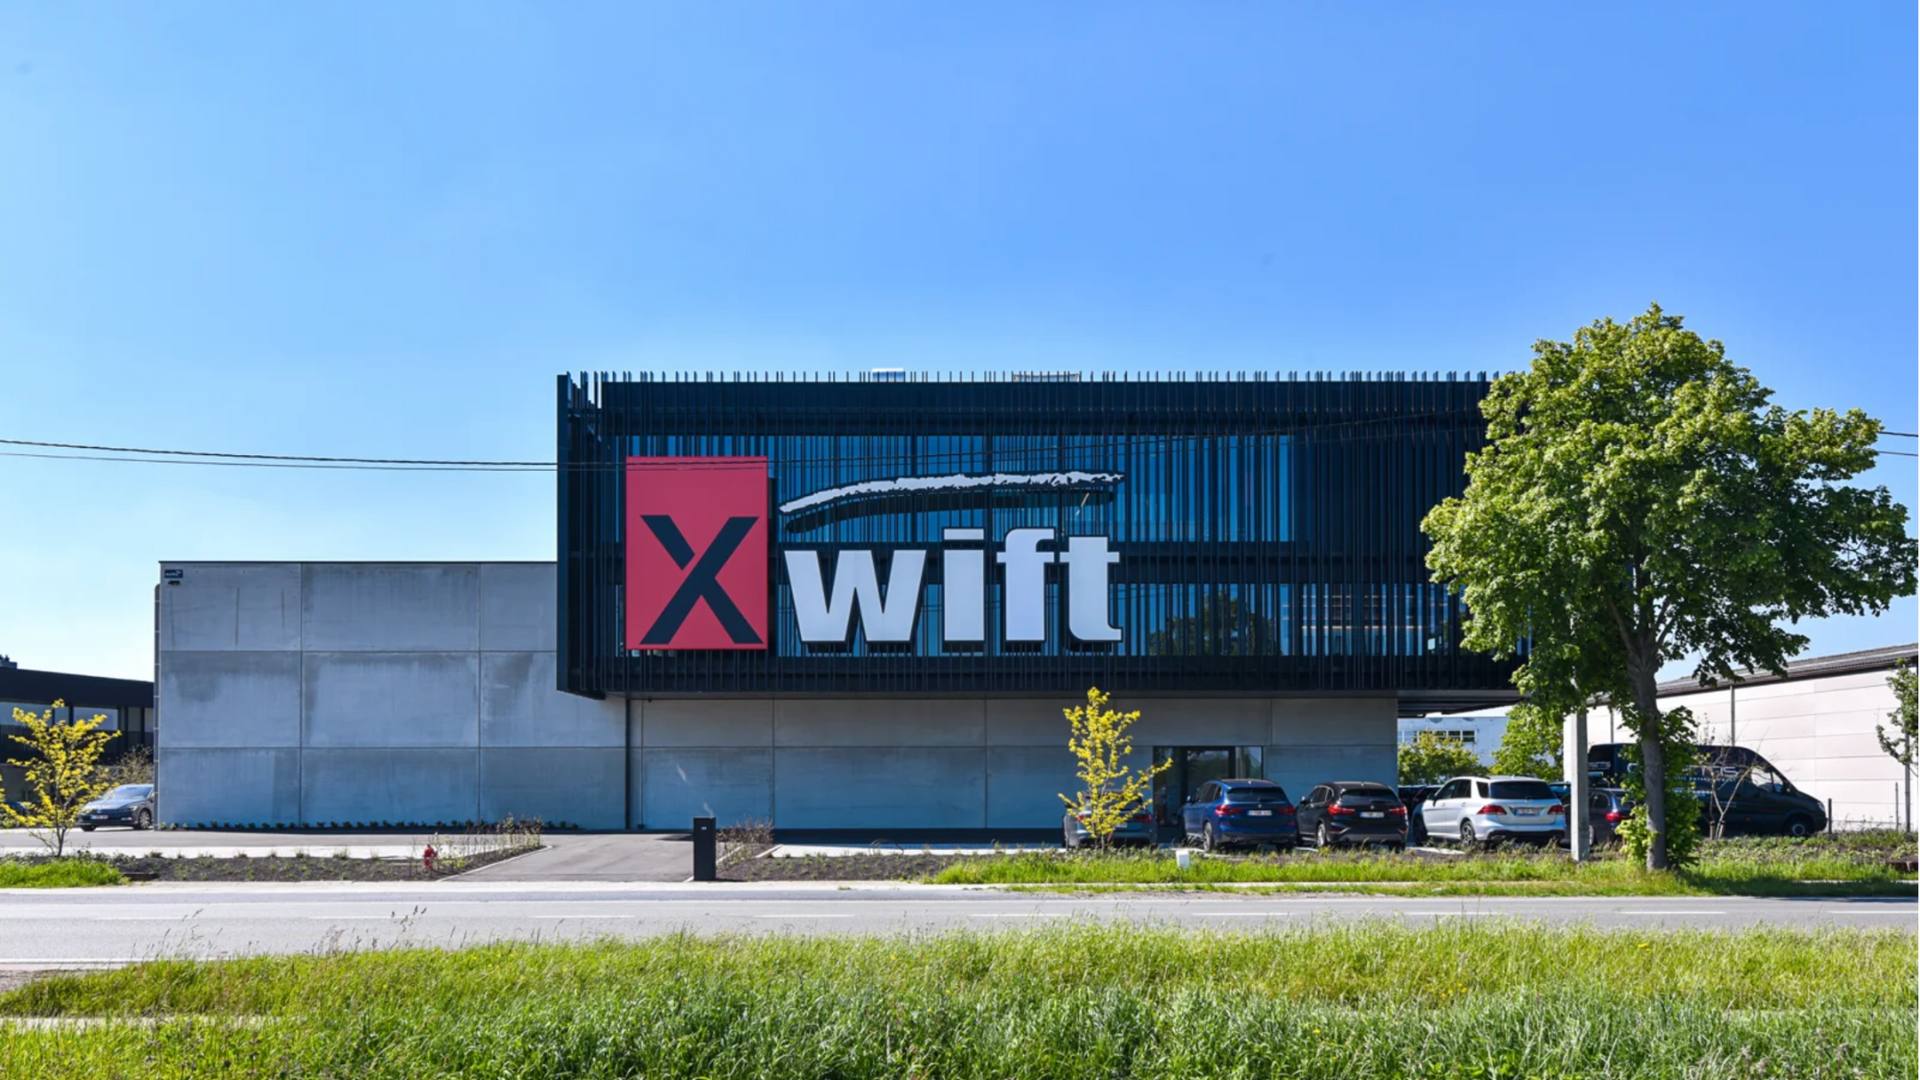 Pour son eMobilité, Xwift opte pour les solutions innovantes de DKV Mobility